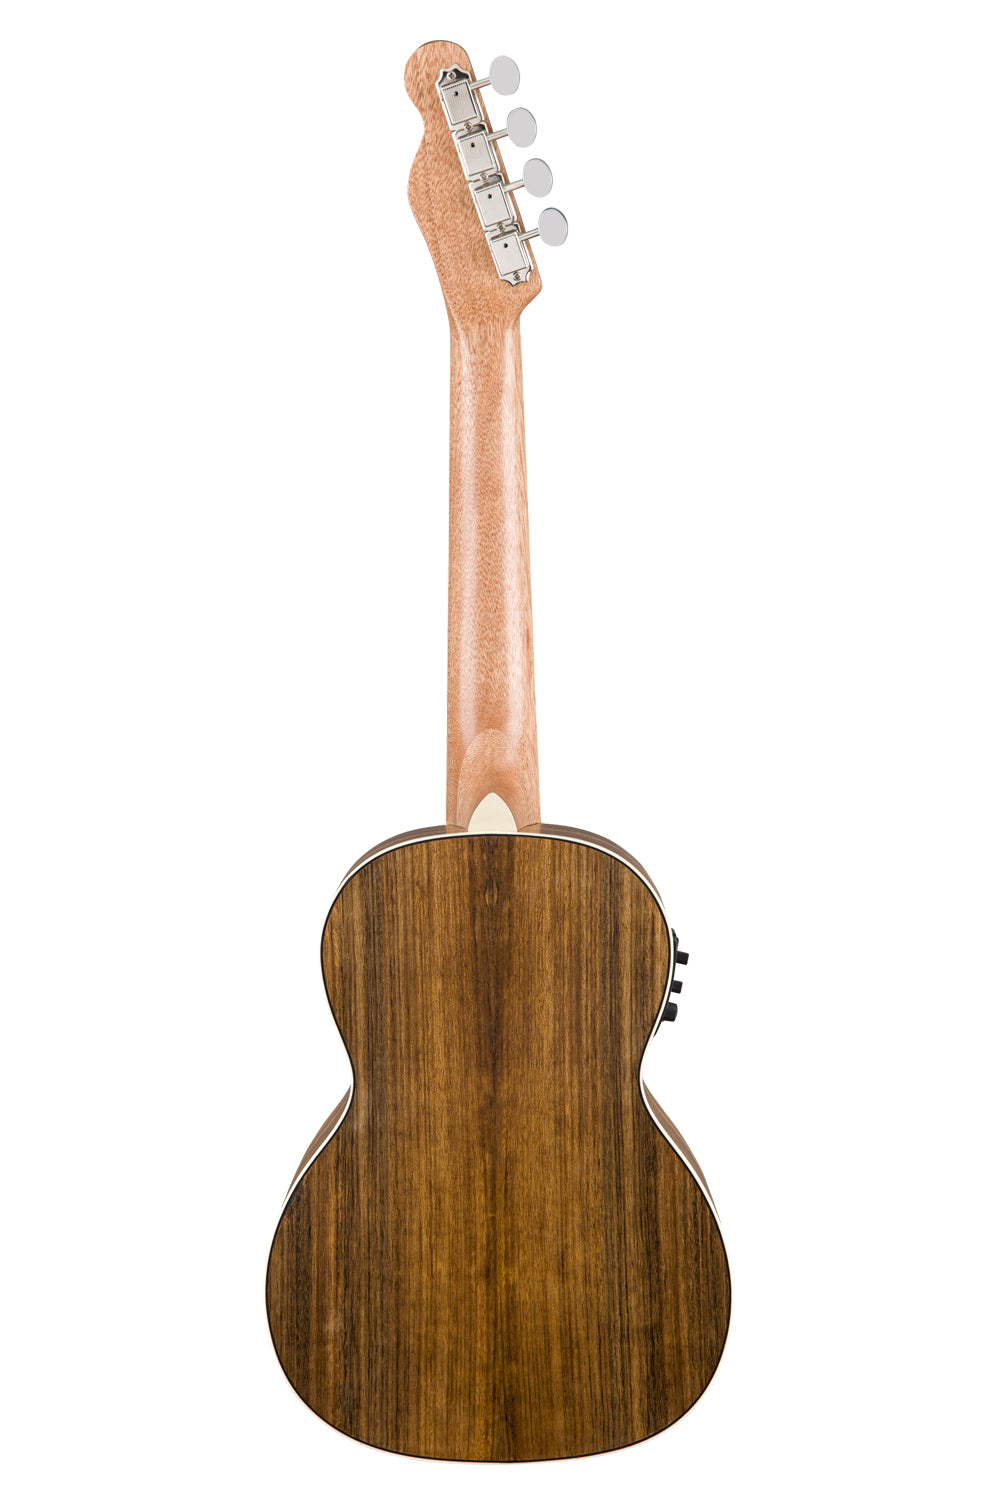 Fender Rincon Tenor Ukulele V2 with Ovangkol Fingerboard - Natural